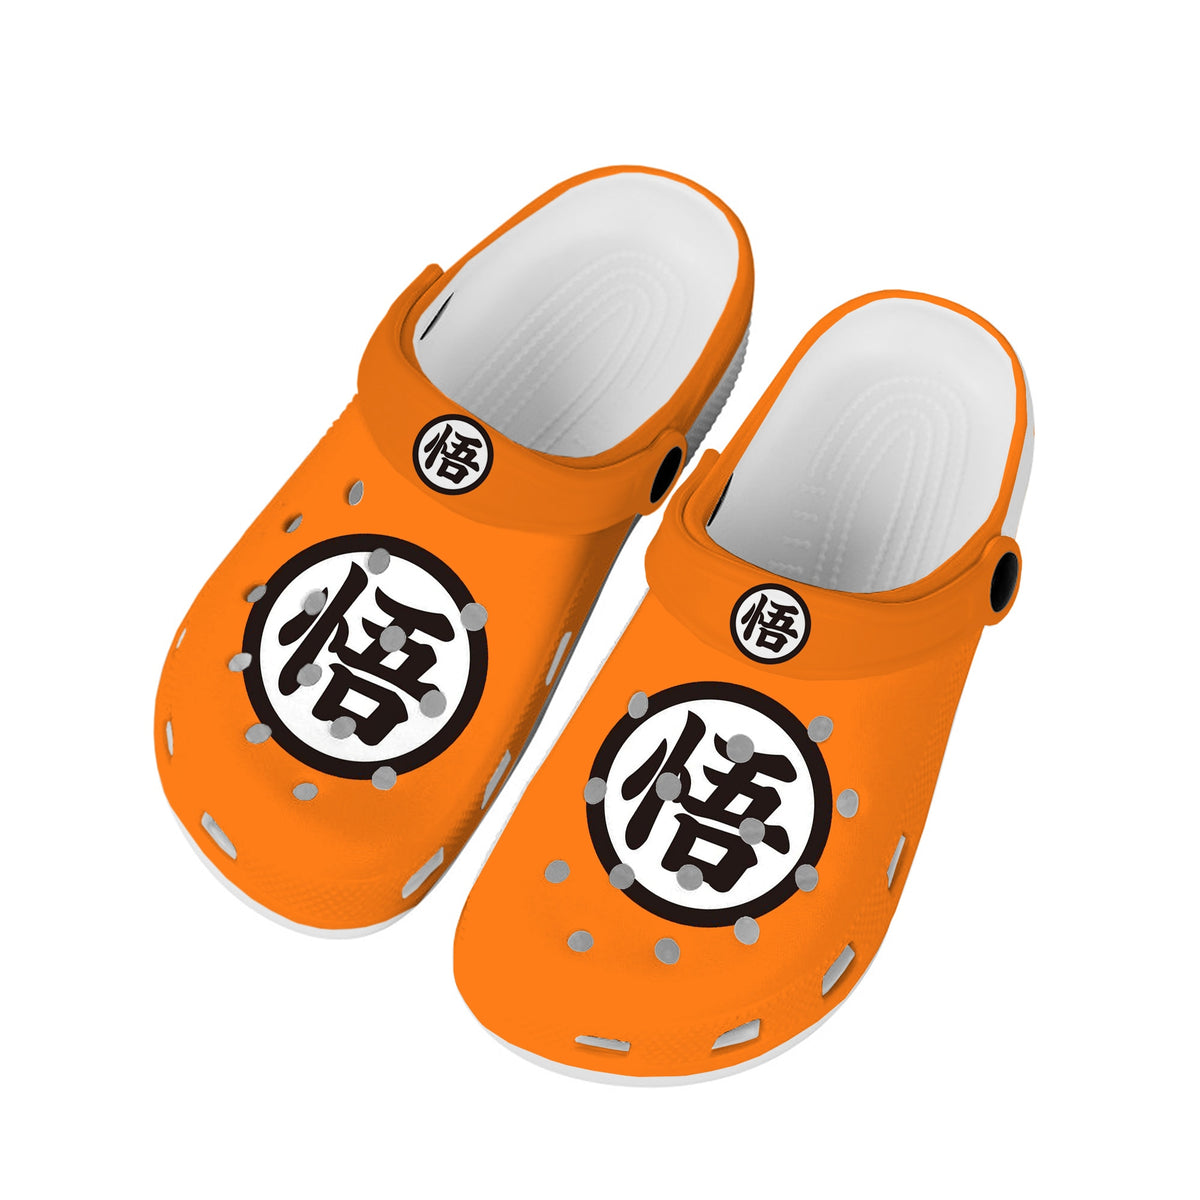 Dragon Ball Z Croc-Style Shoes - Nerd Alert